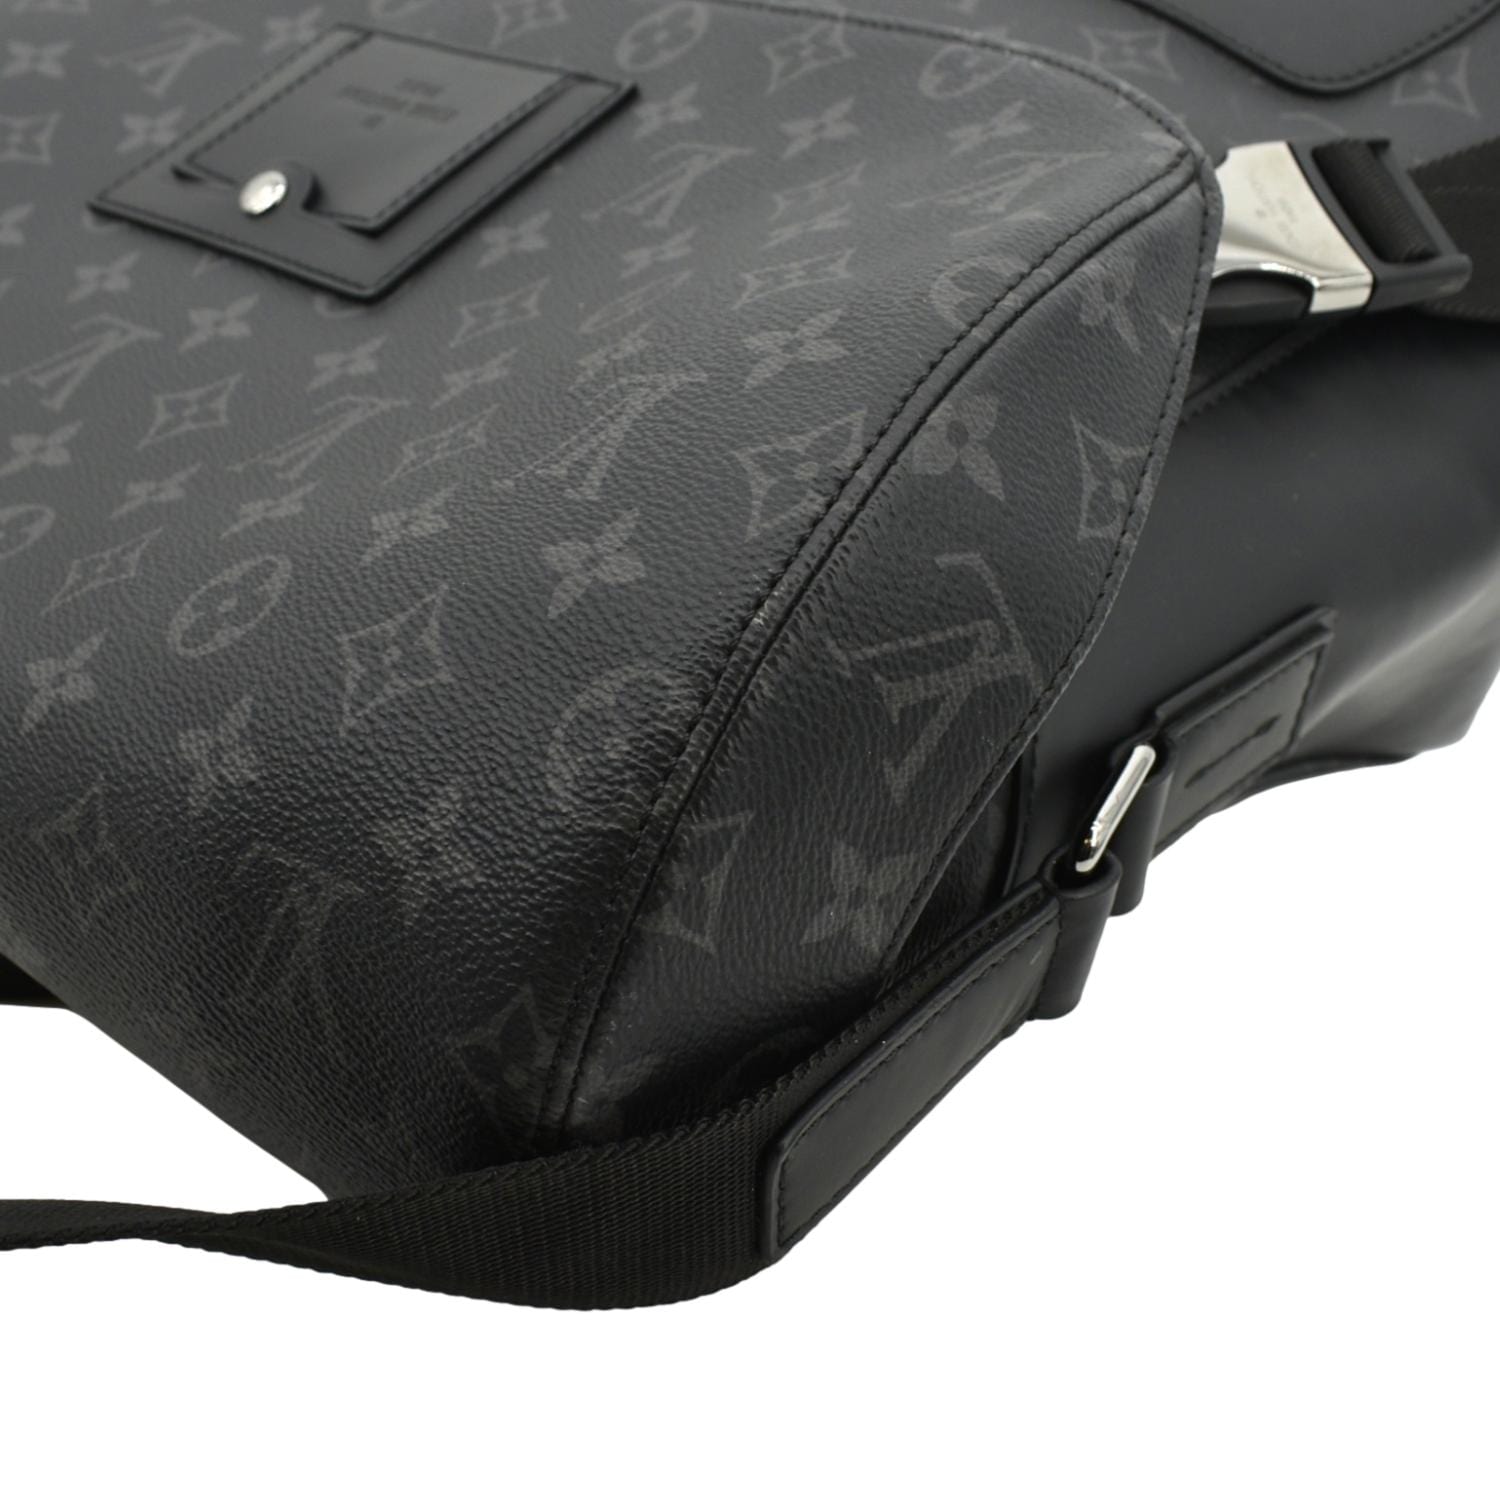 Sac Messenger Pm Voyager Louis Vuitton Bag